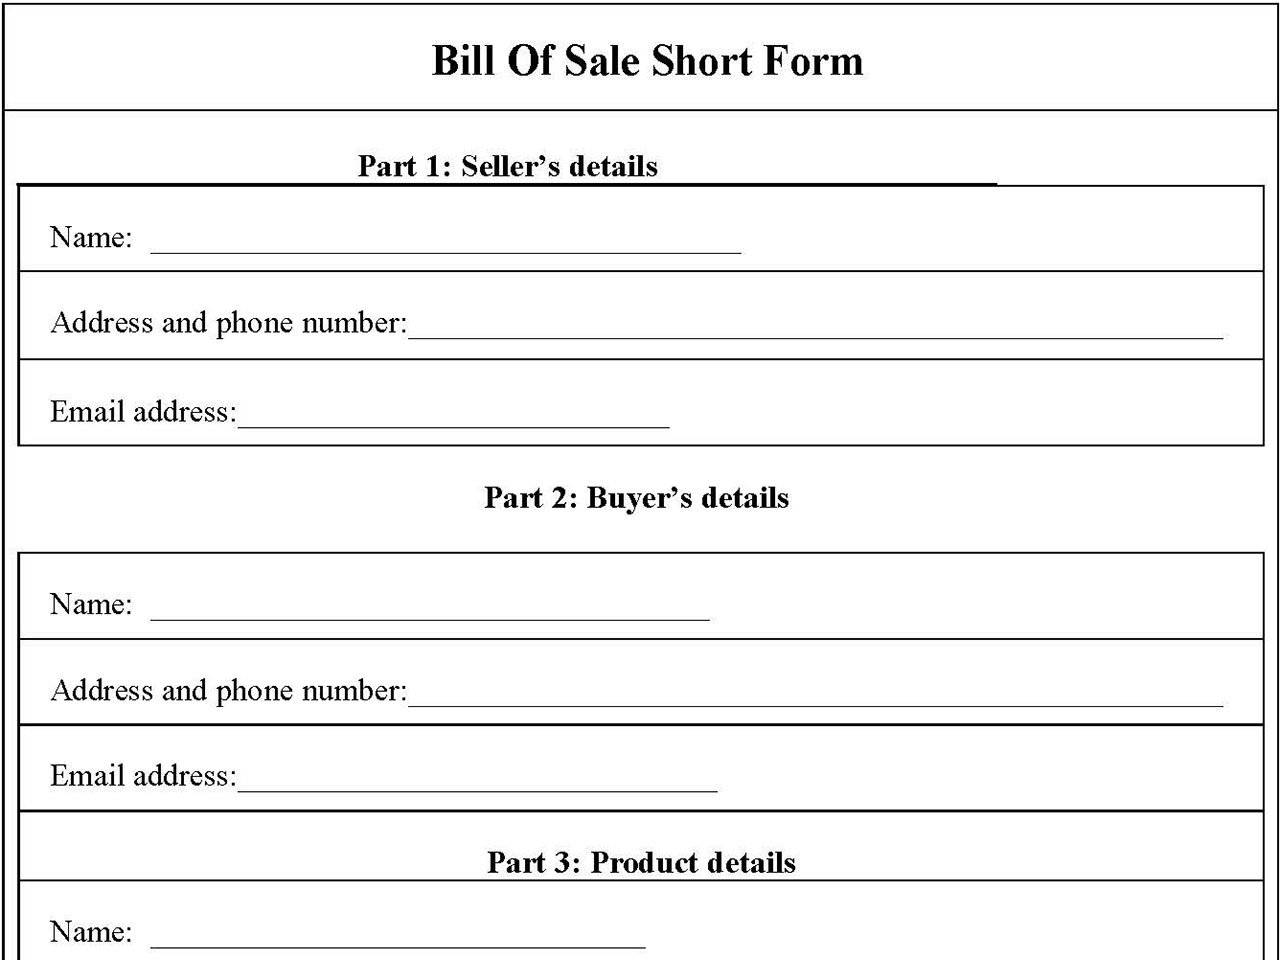 Bill Of Sale Short Form